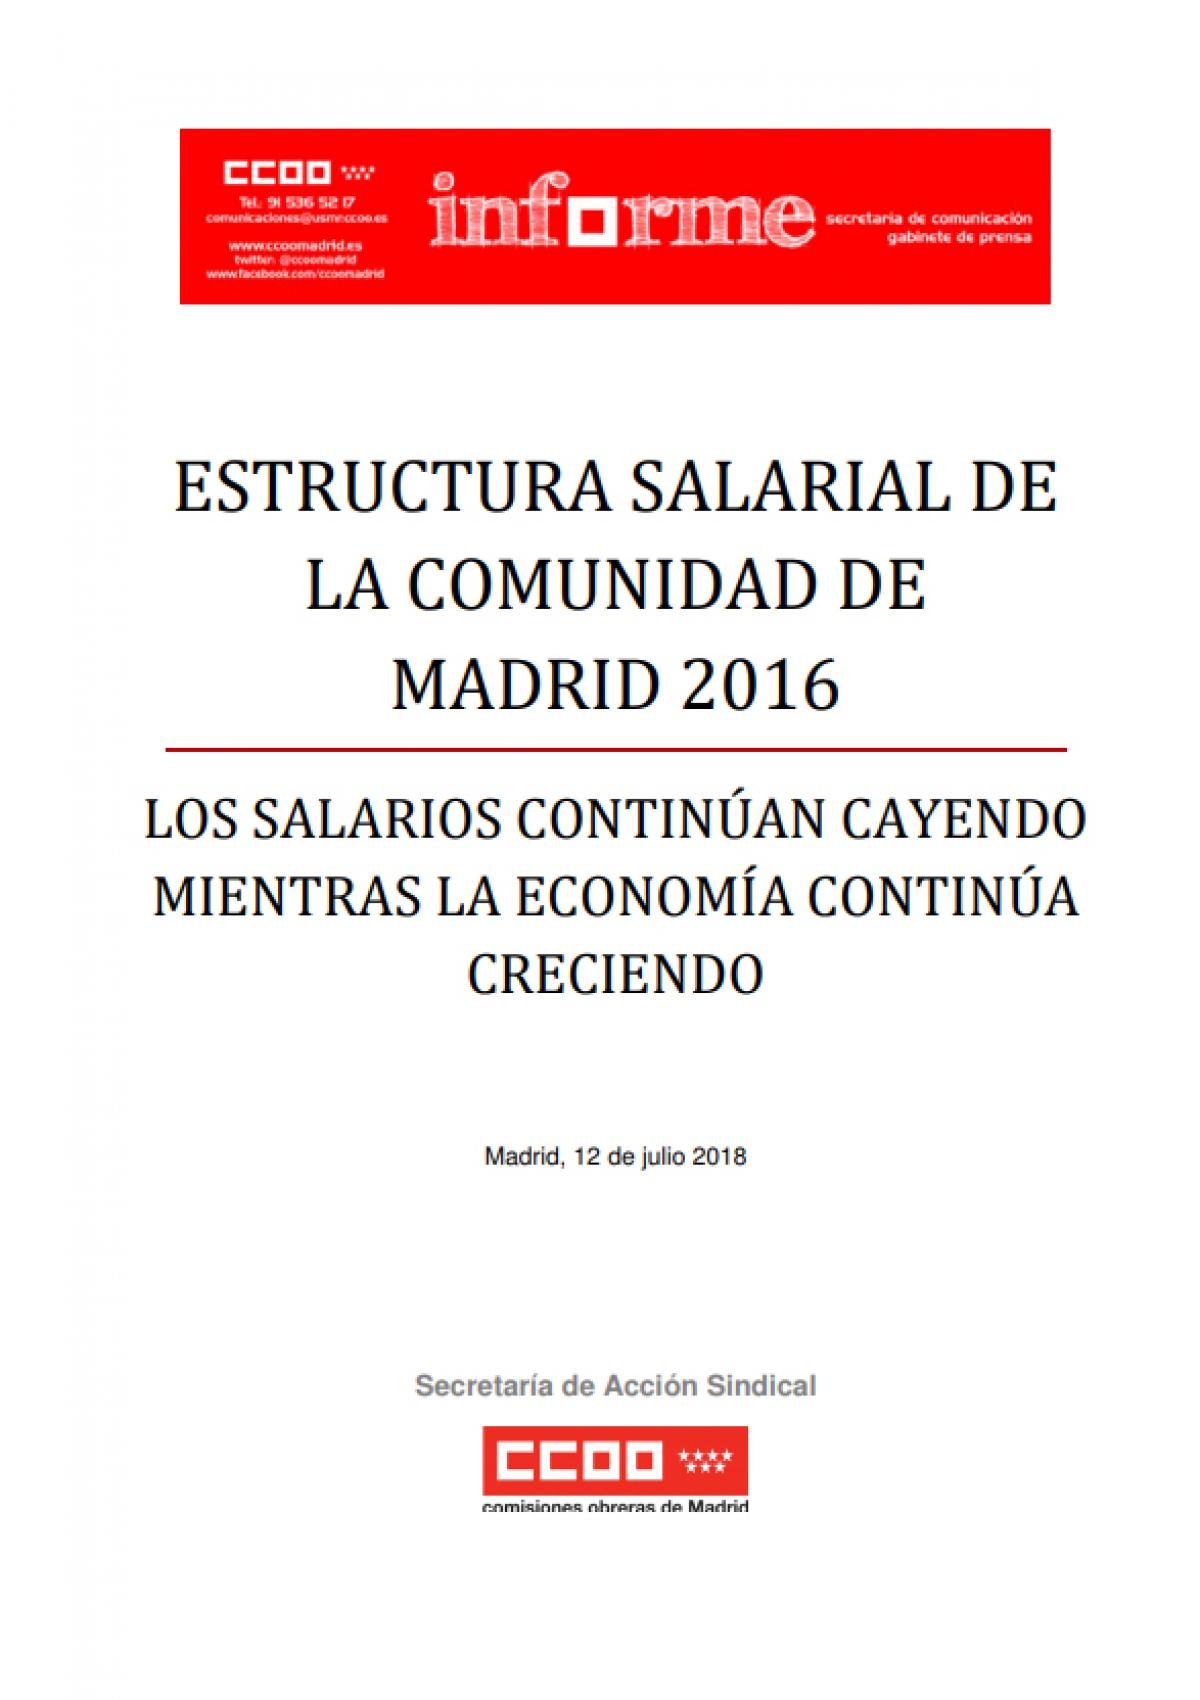 Estructura salarial de la Comunidad de Madrid 2016